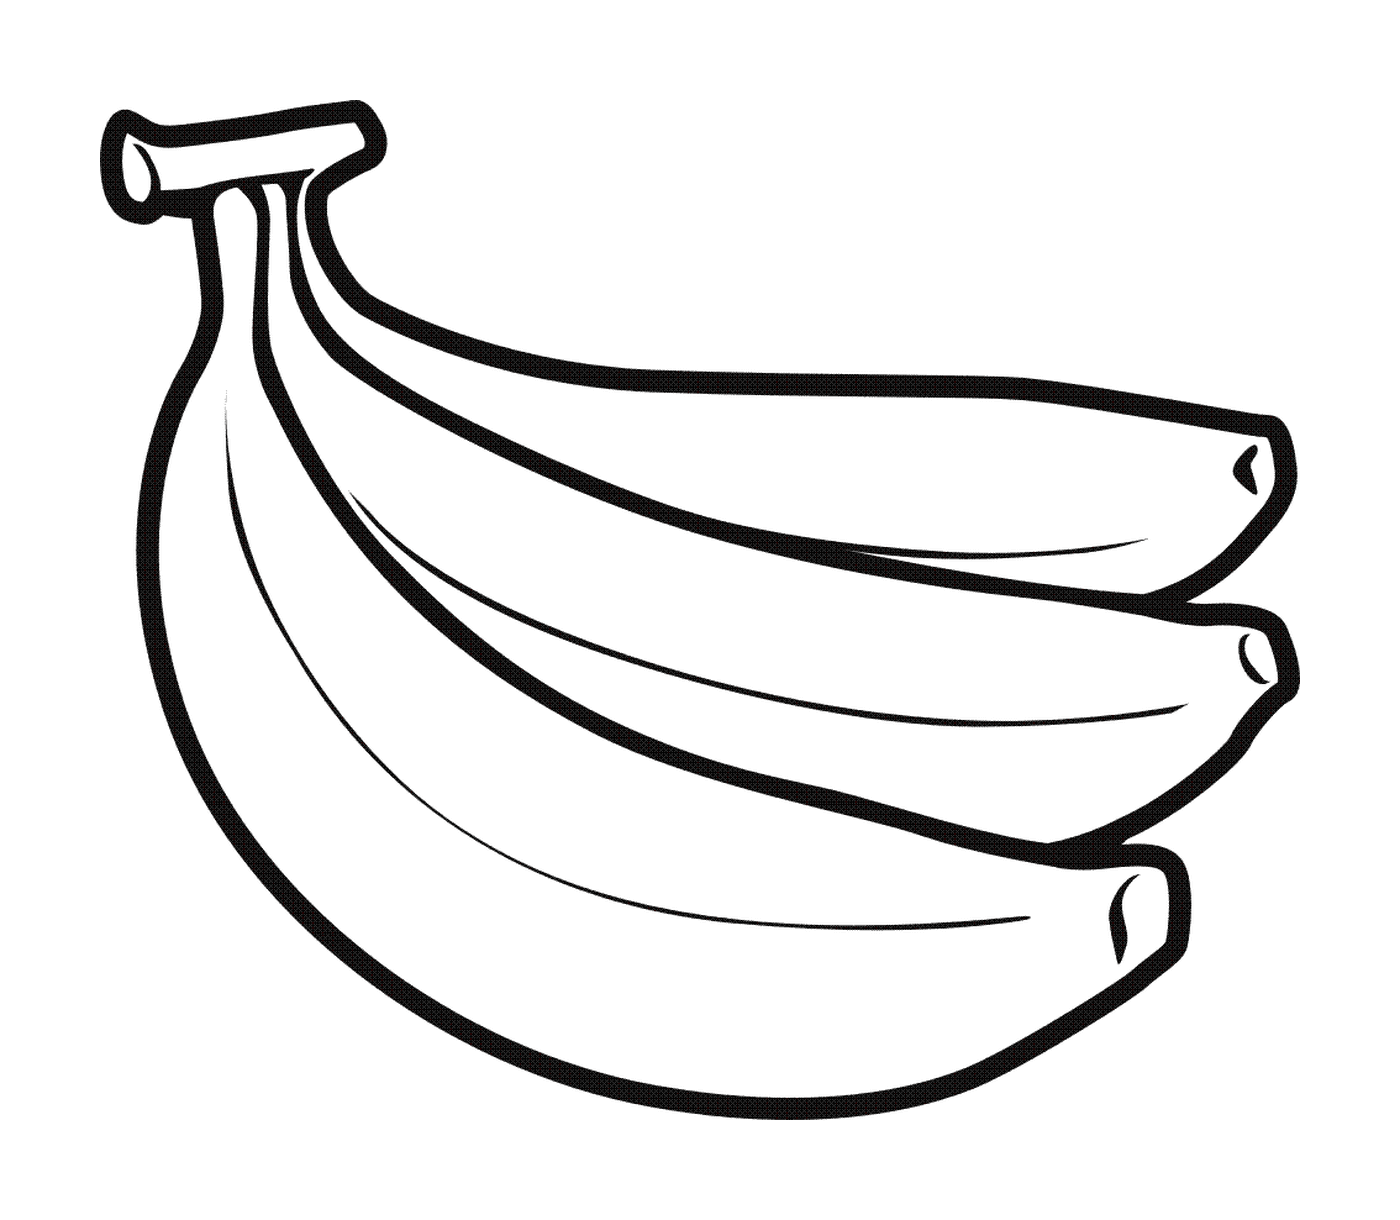  Banane mature per terra 